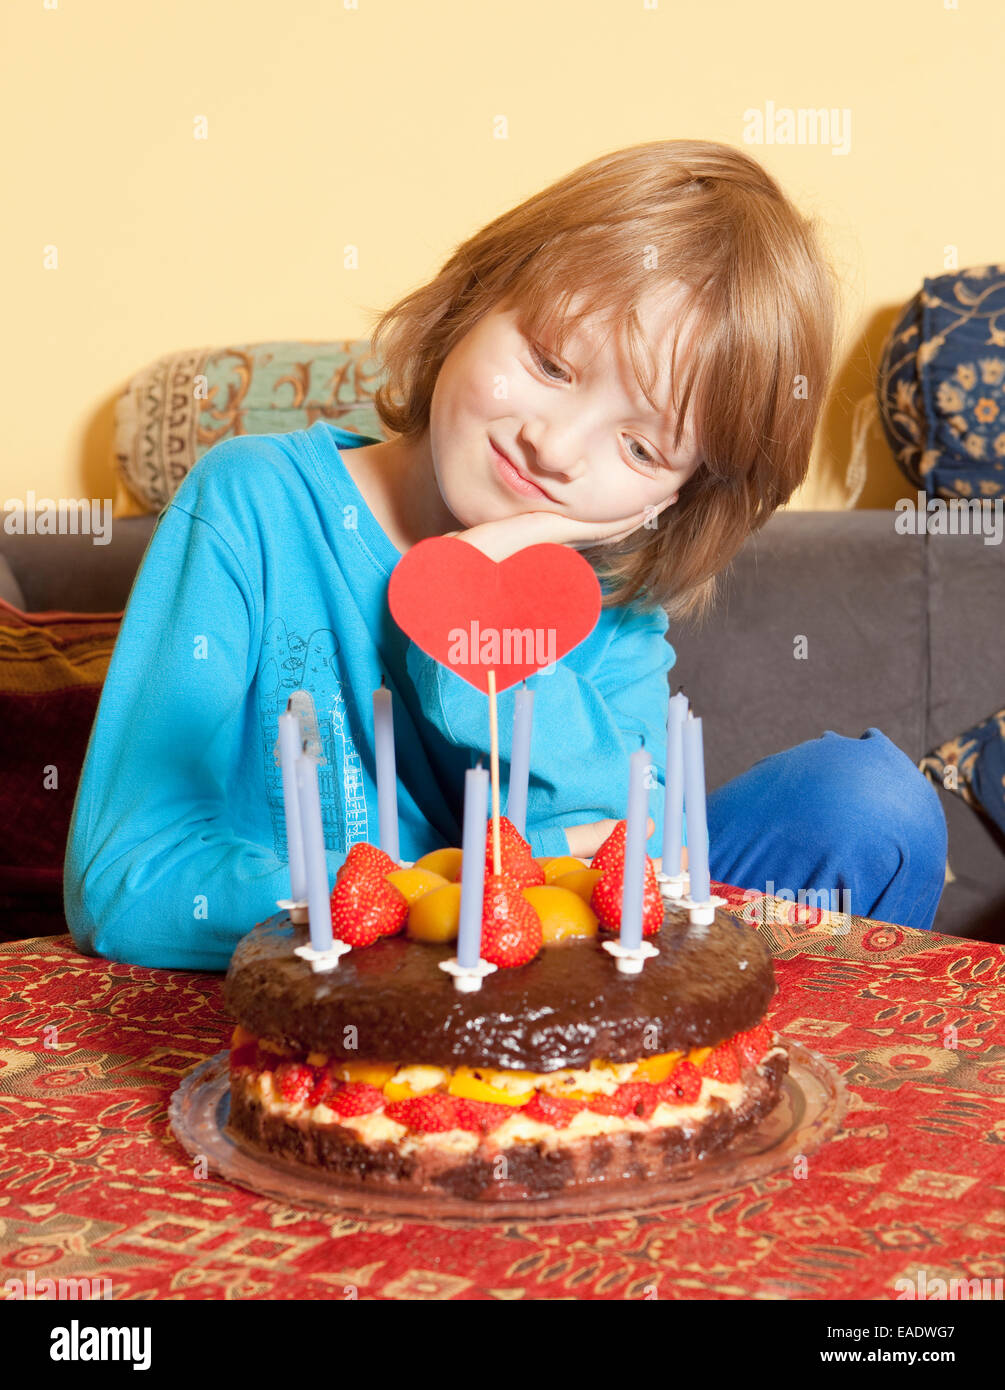 Junge mit blonden Haaren mit Blick auf seine Geburtstagstorte Stockfoto